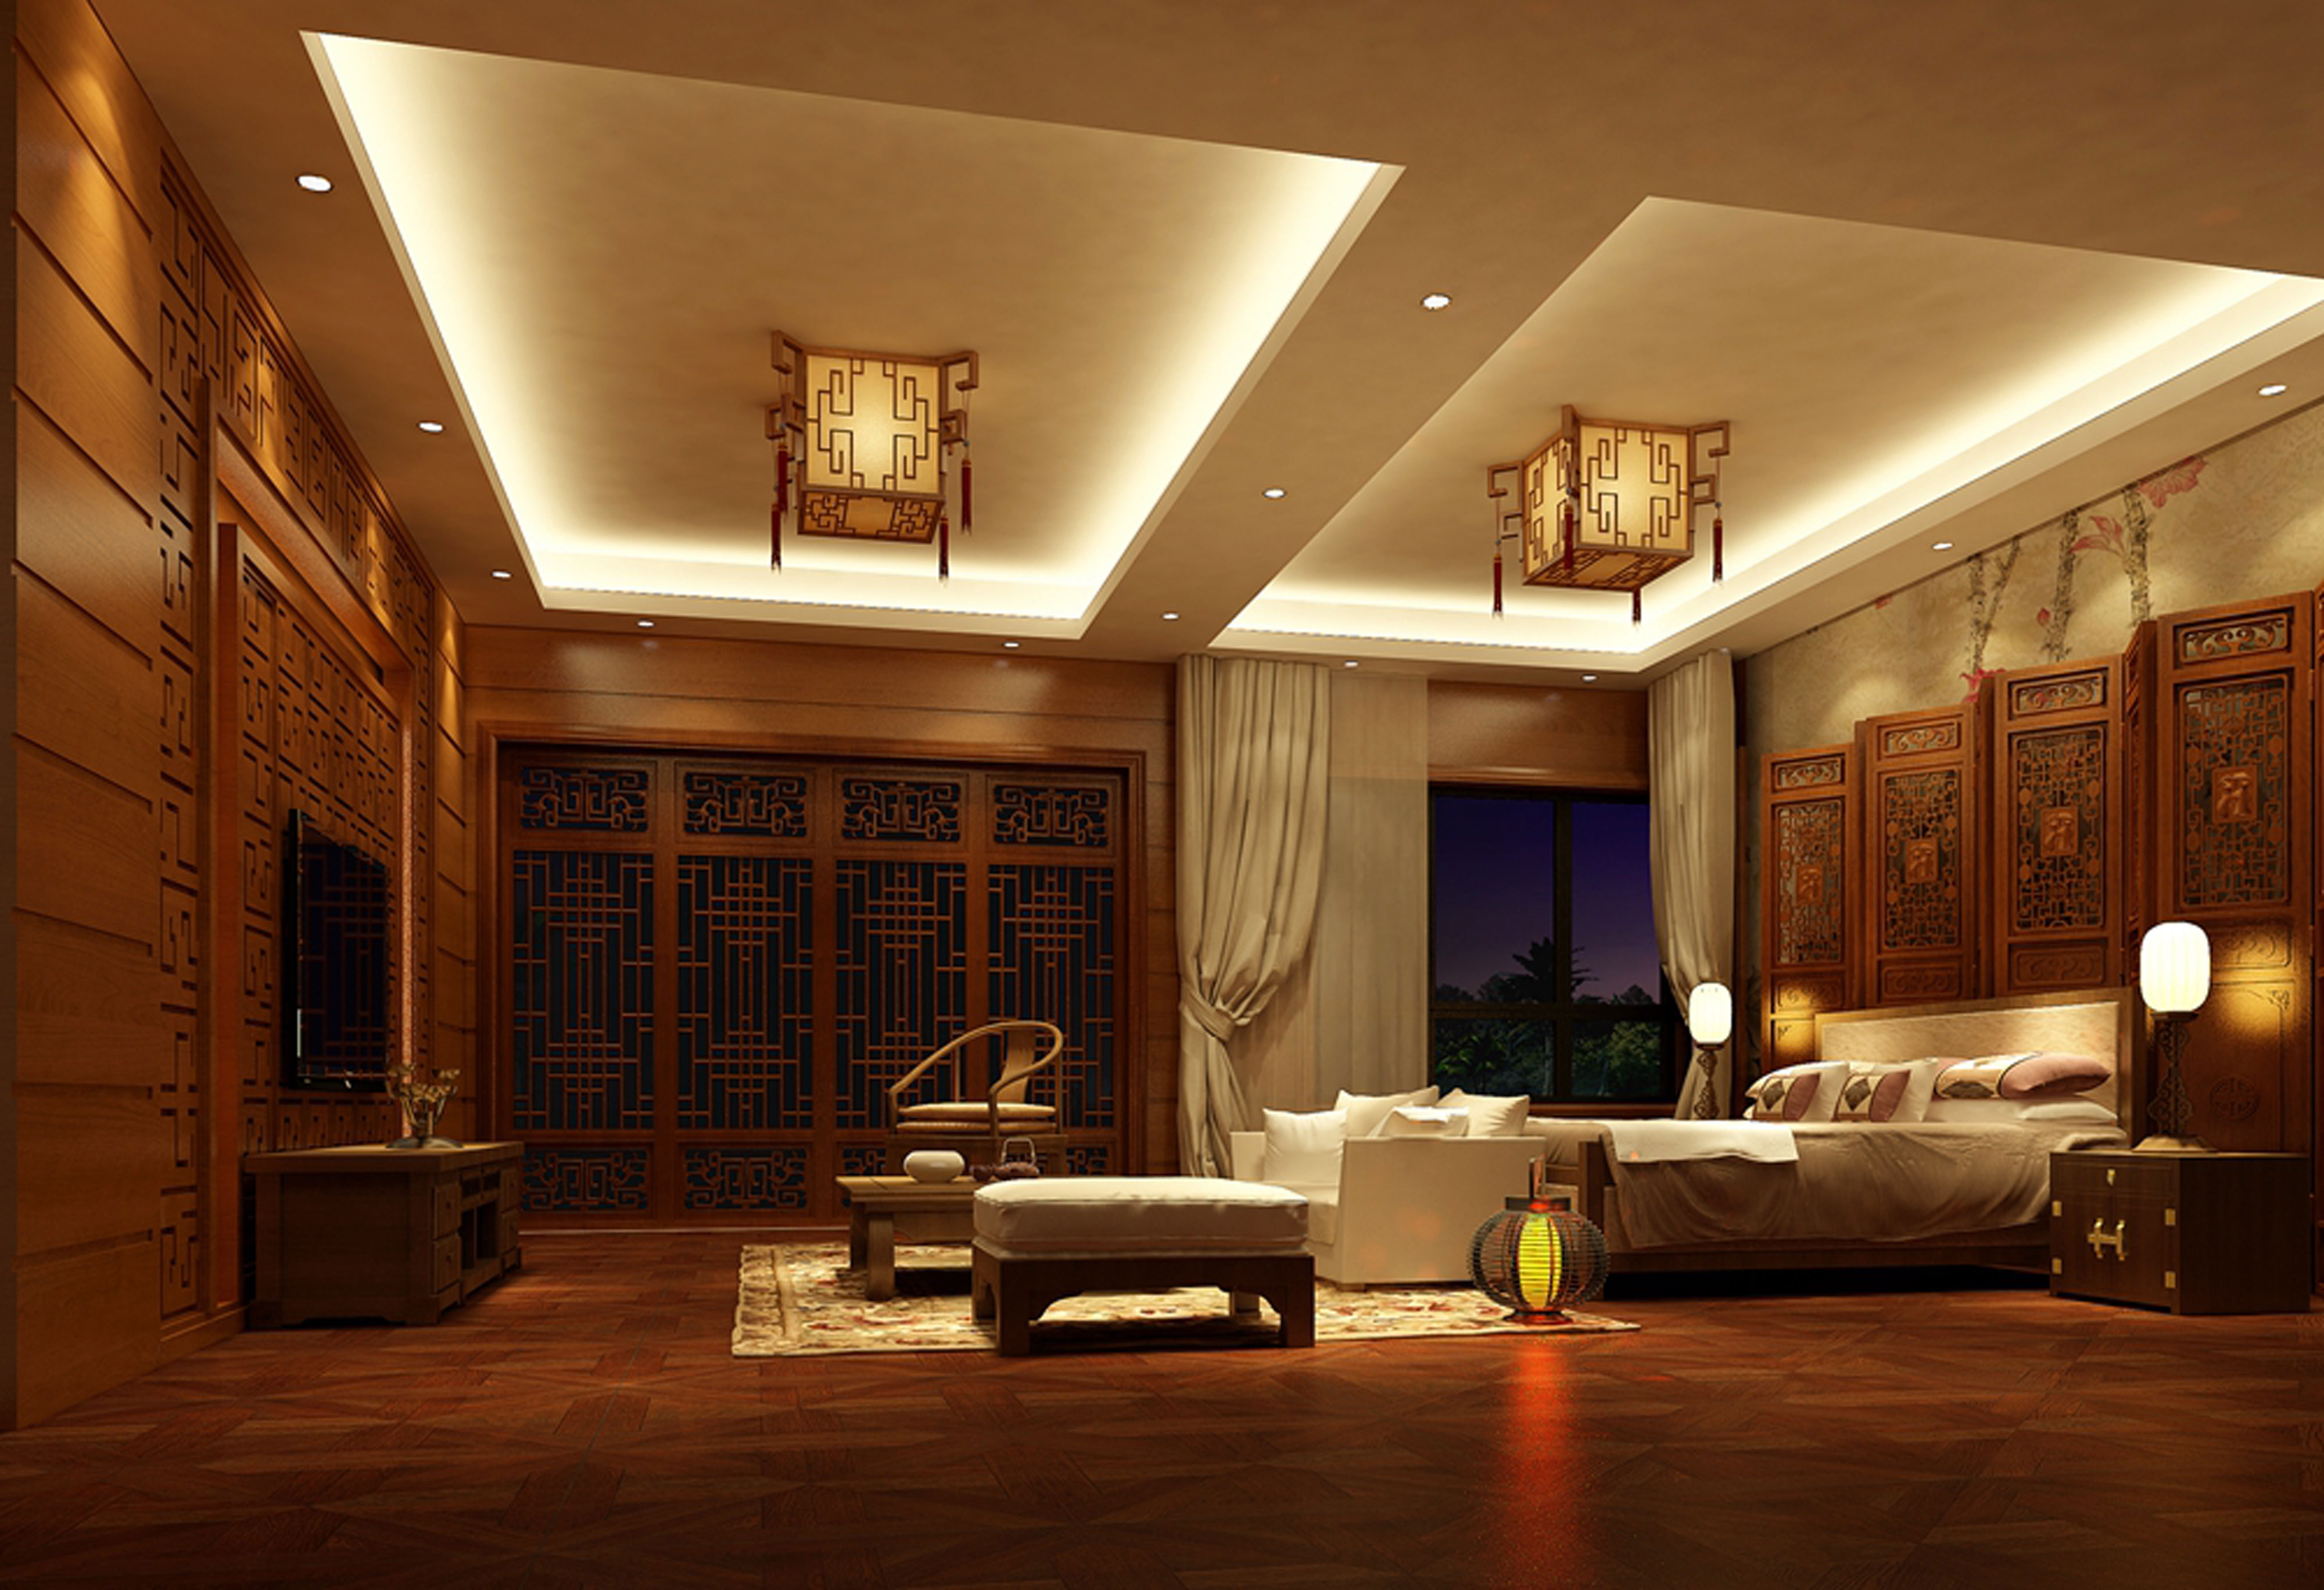 中式风格别墅卧室装修效果图